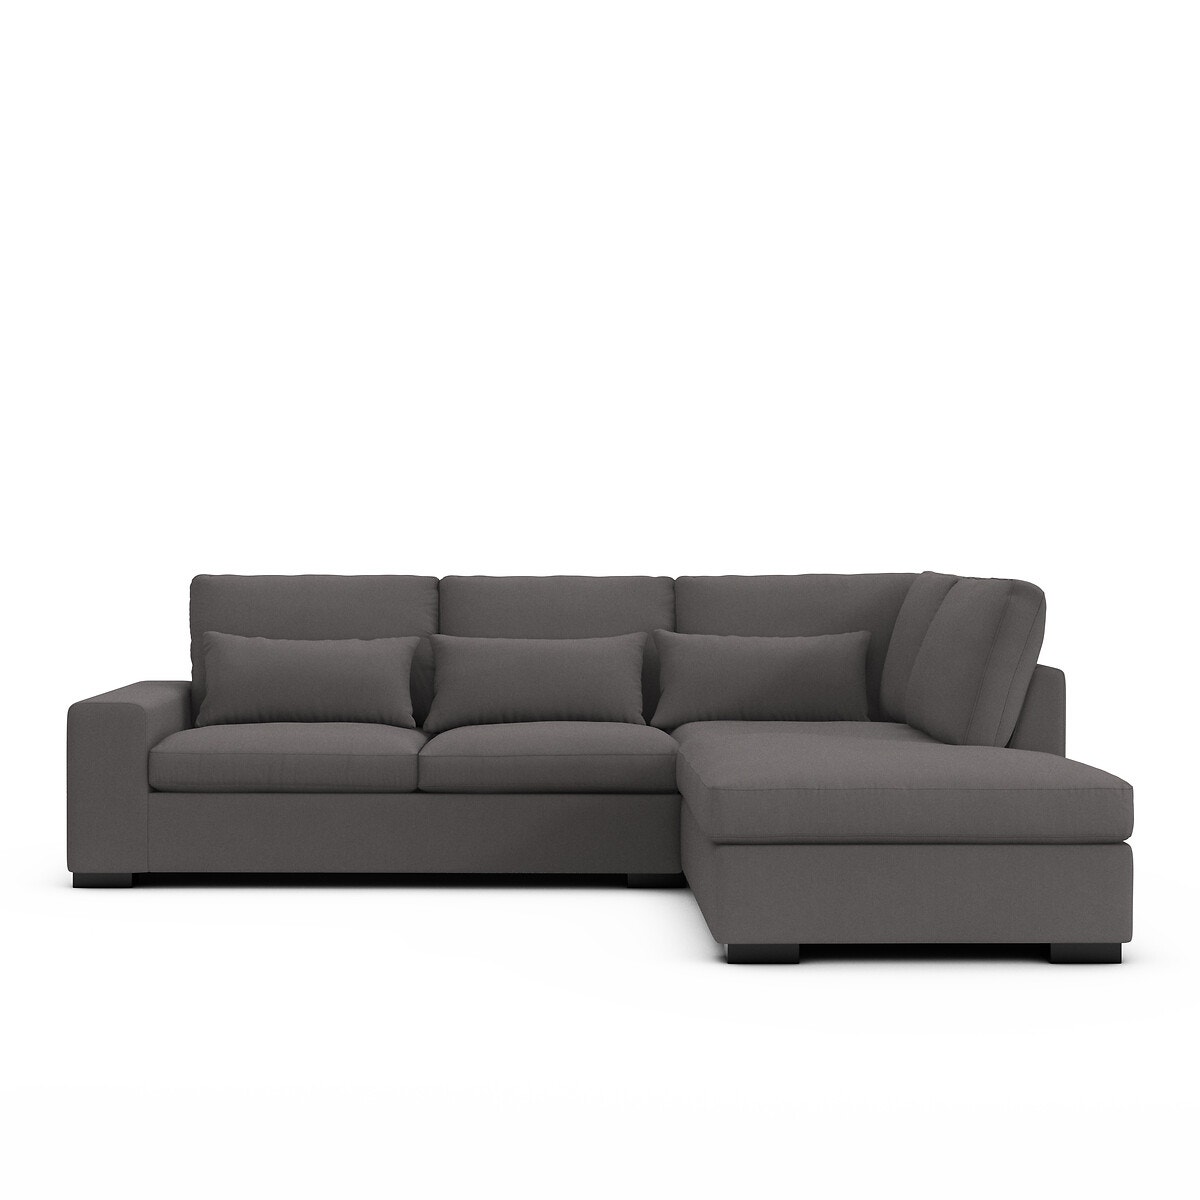 Σπίτι > Έπιπλα > Καθιστικό > Καναπέδες > Γωνιακοί καναπέδες Γωνιακός καναπές με τεχνολογία Bultex Μ208xΠ245xΥ80cm